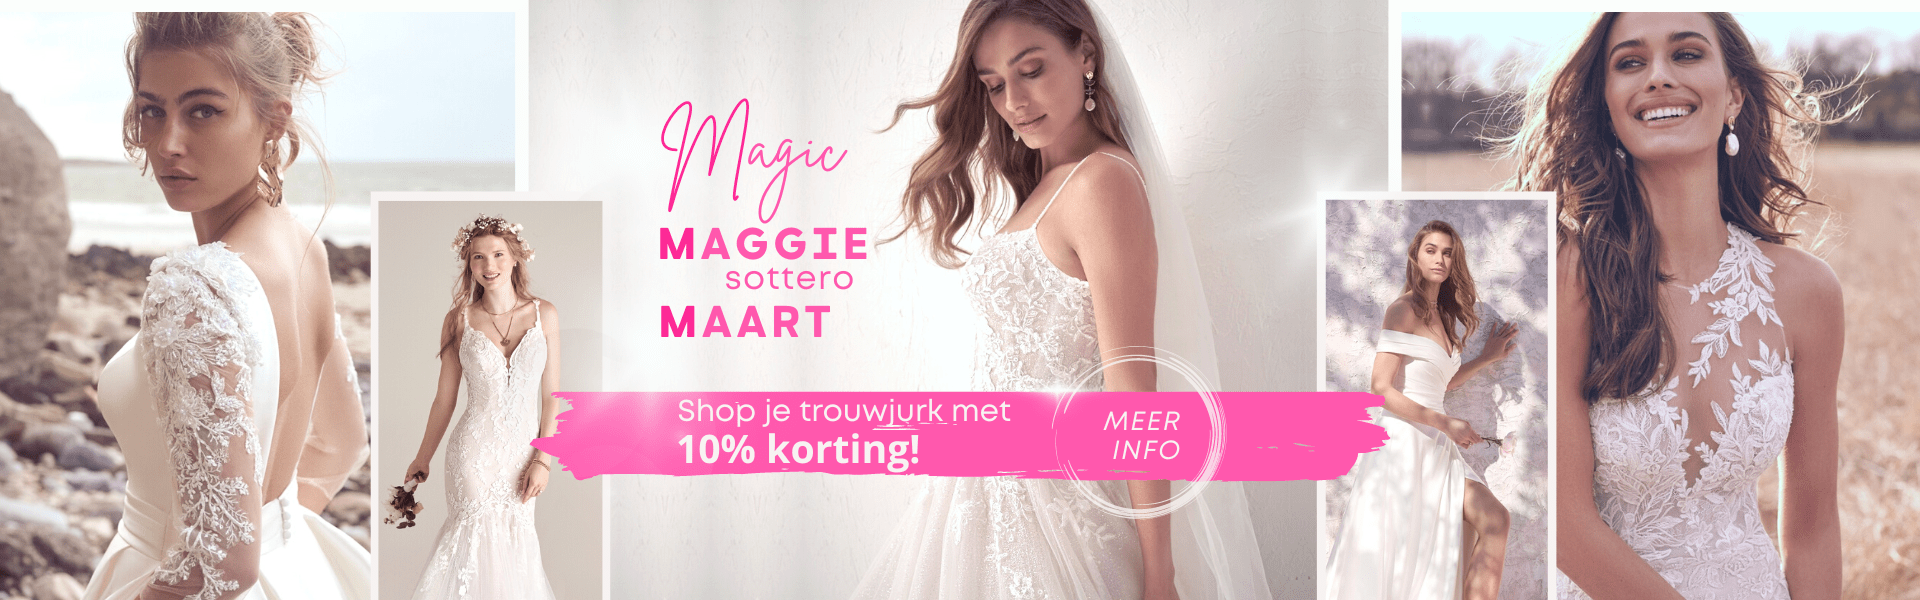 Magic Maggie Maart web